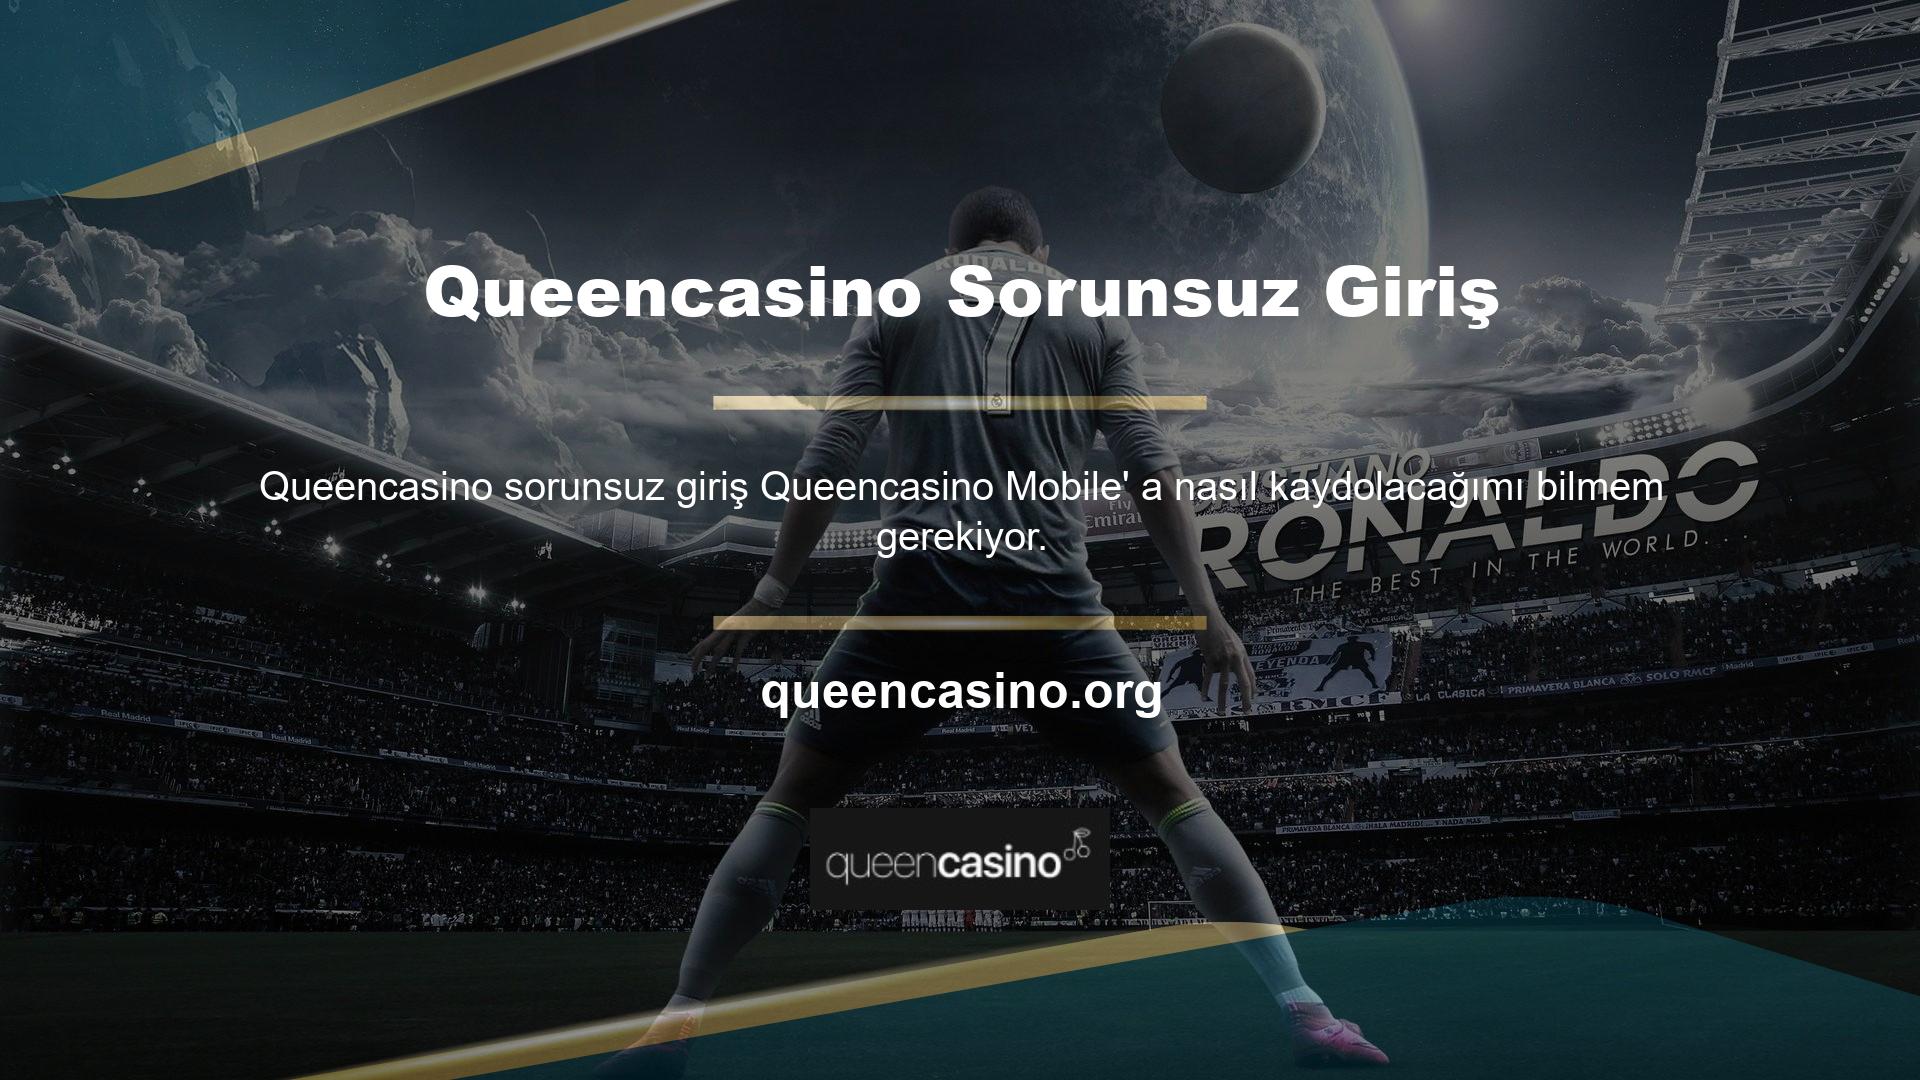 Casino platformu Queencasino en kazançlı hizmetler